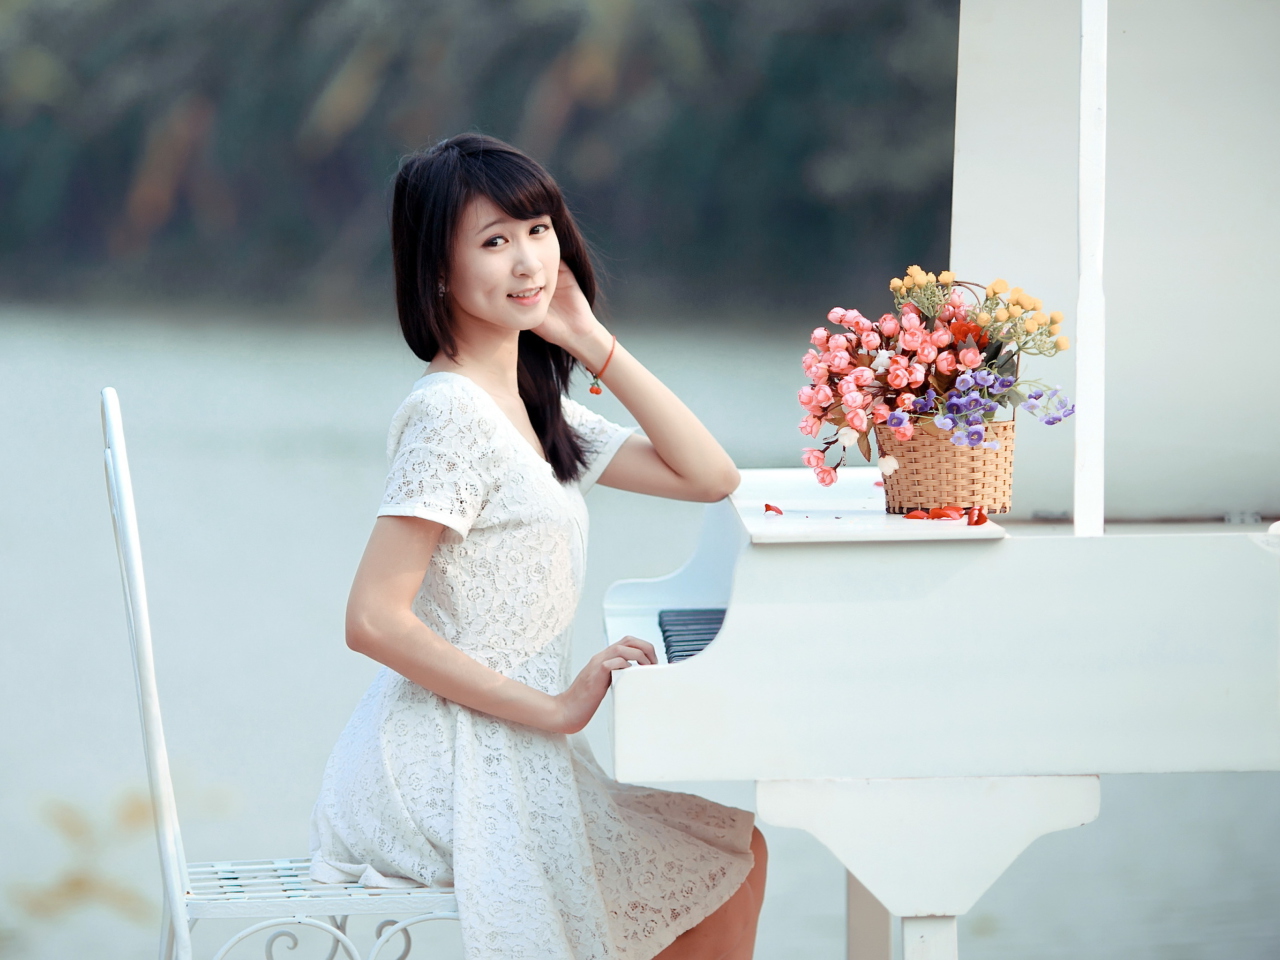 Das Young Asian Girl By Piano Wallpaper 1280x960